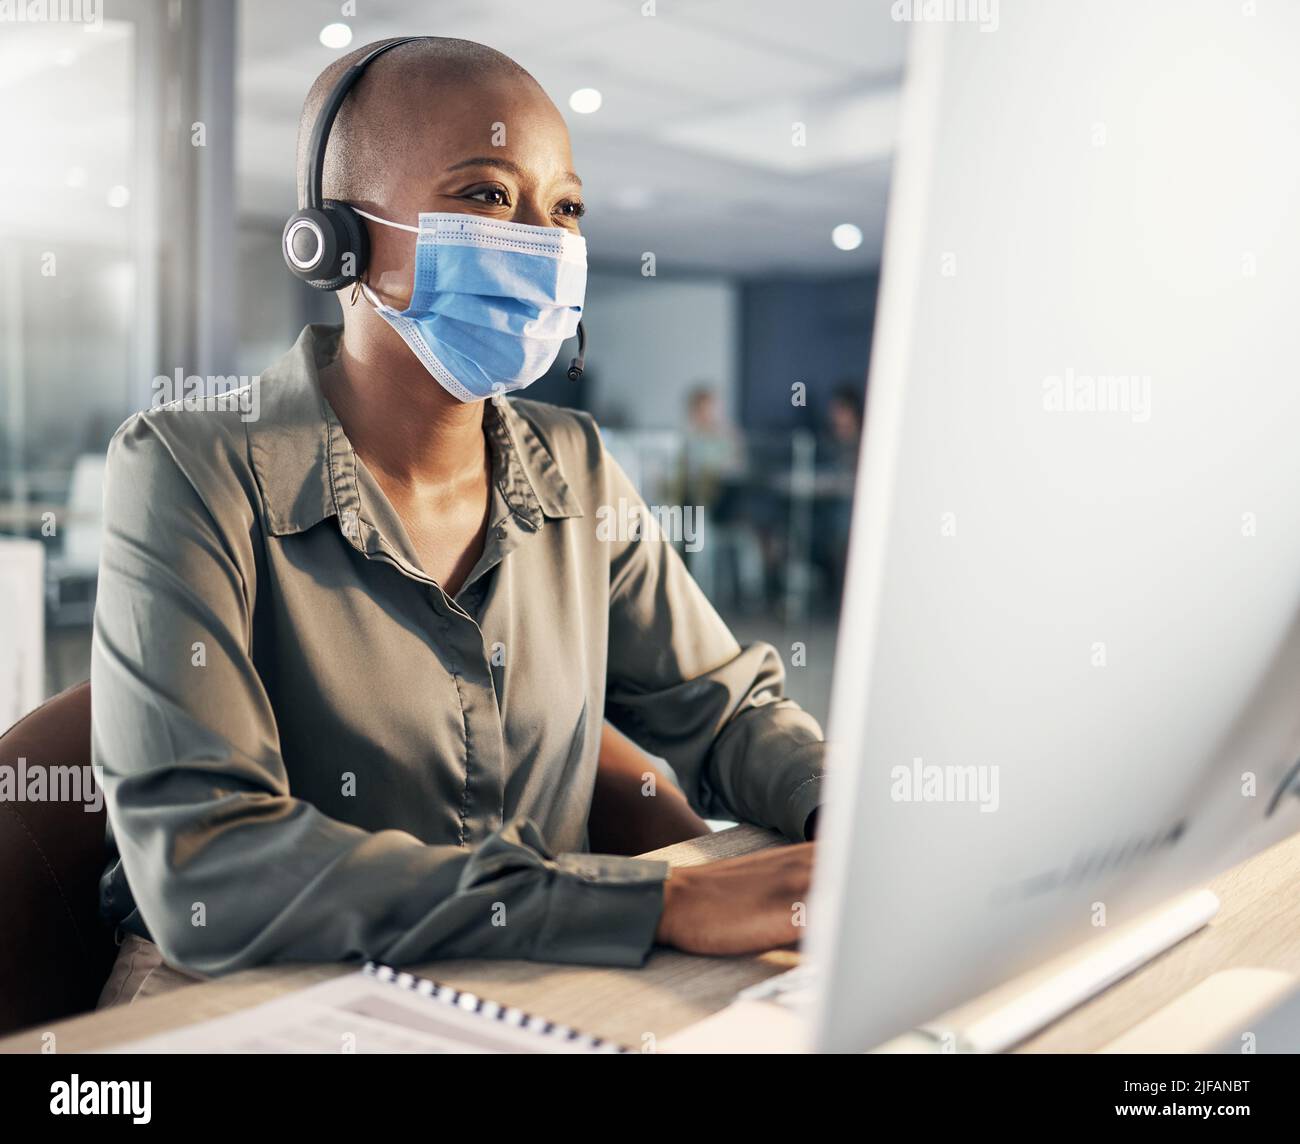 Ein afroamerikanischer Callcenter-Telemarketing-Agent, der Gesichtsmaske als Gesundheits- und Sicherheitsprotokoll trägt und am Headset spricht, während er einen Computer in einem verwendet Stockfoto